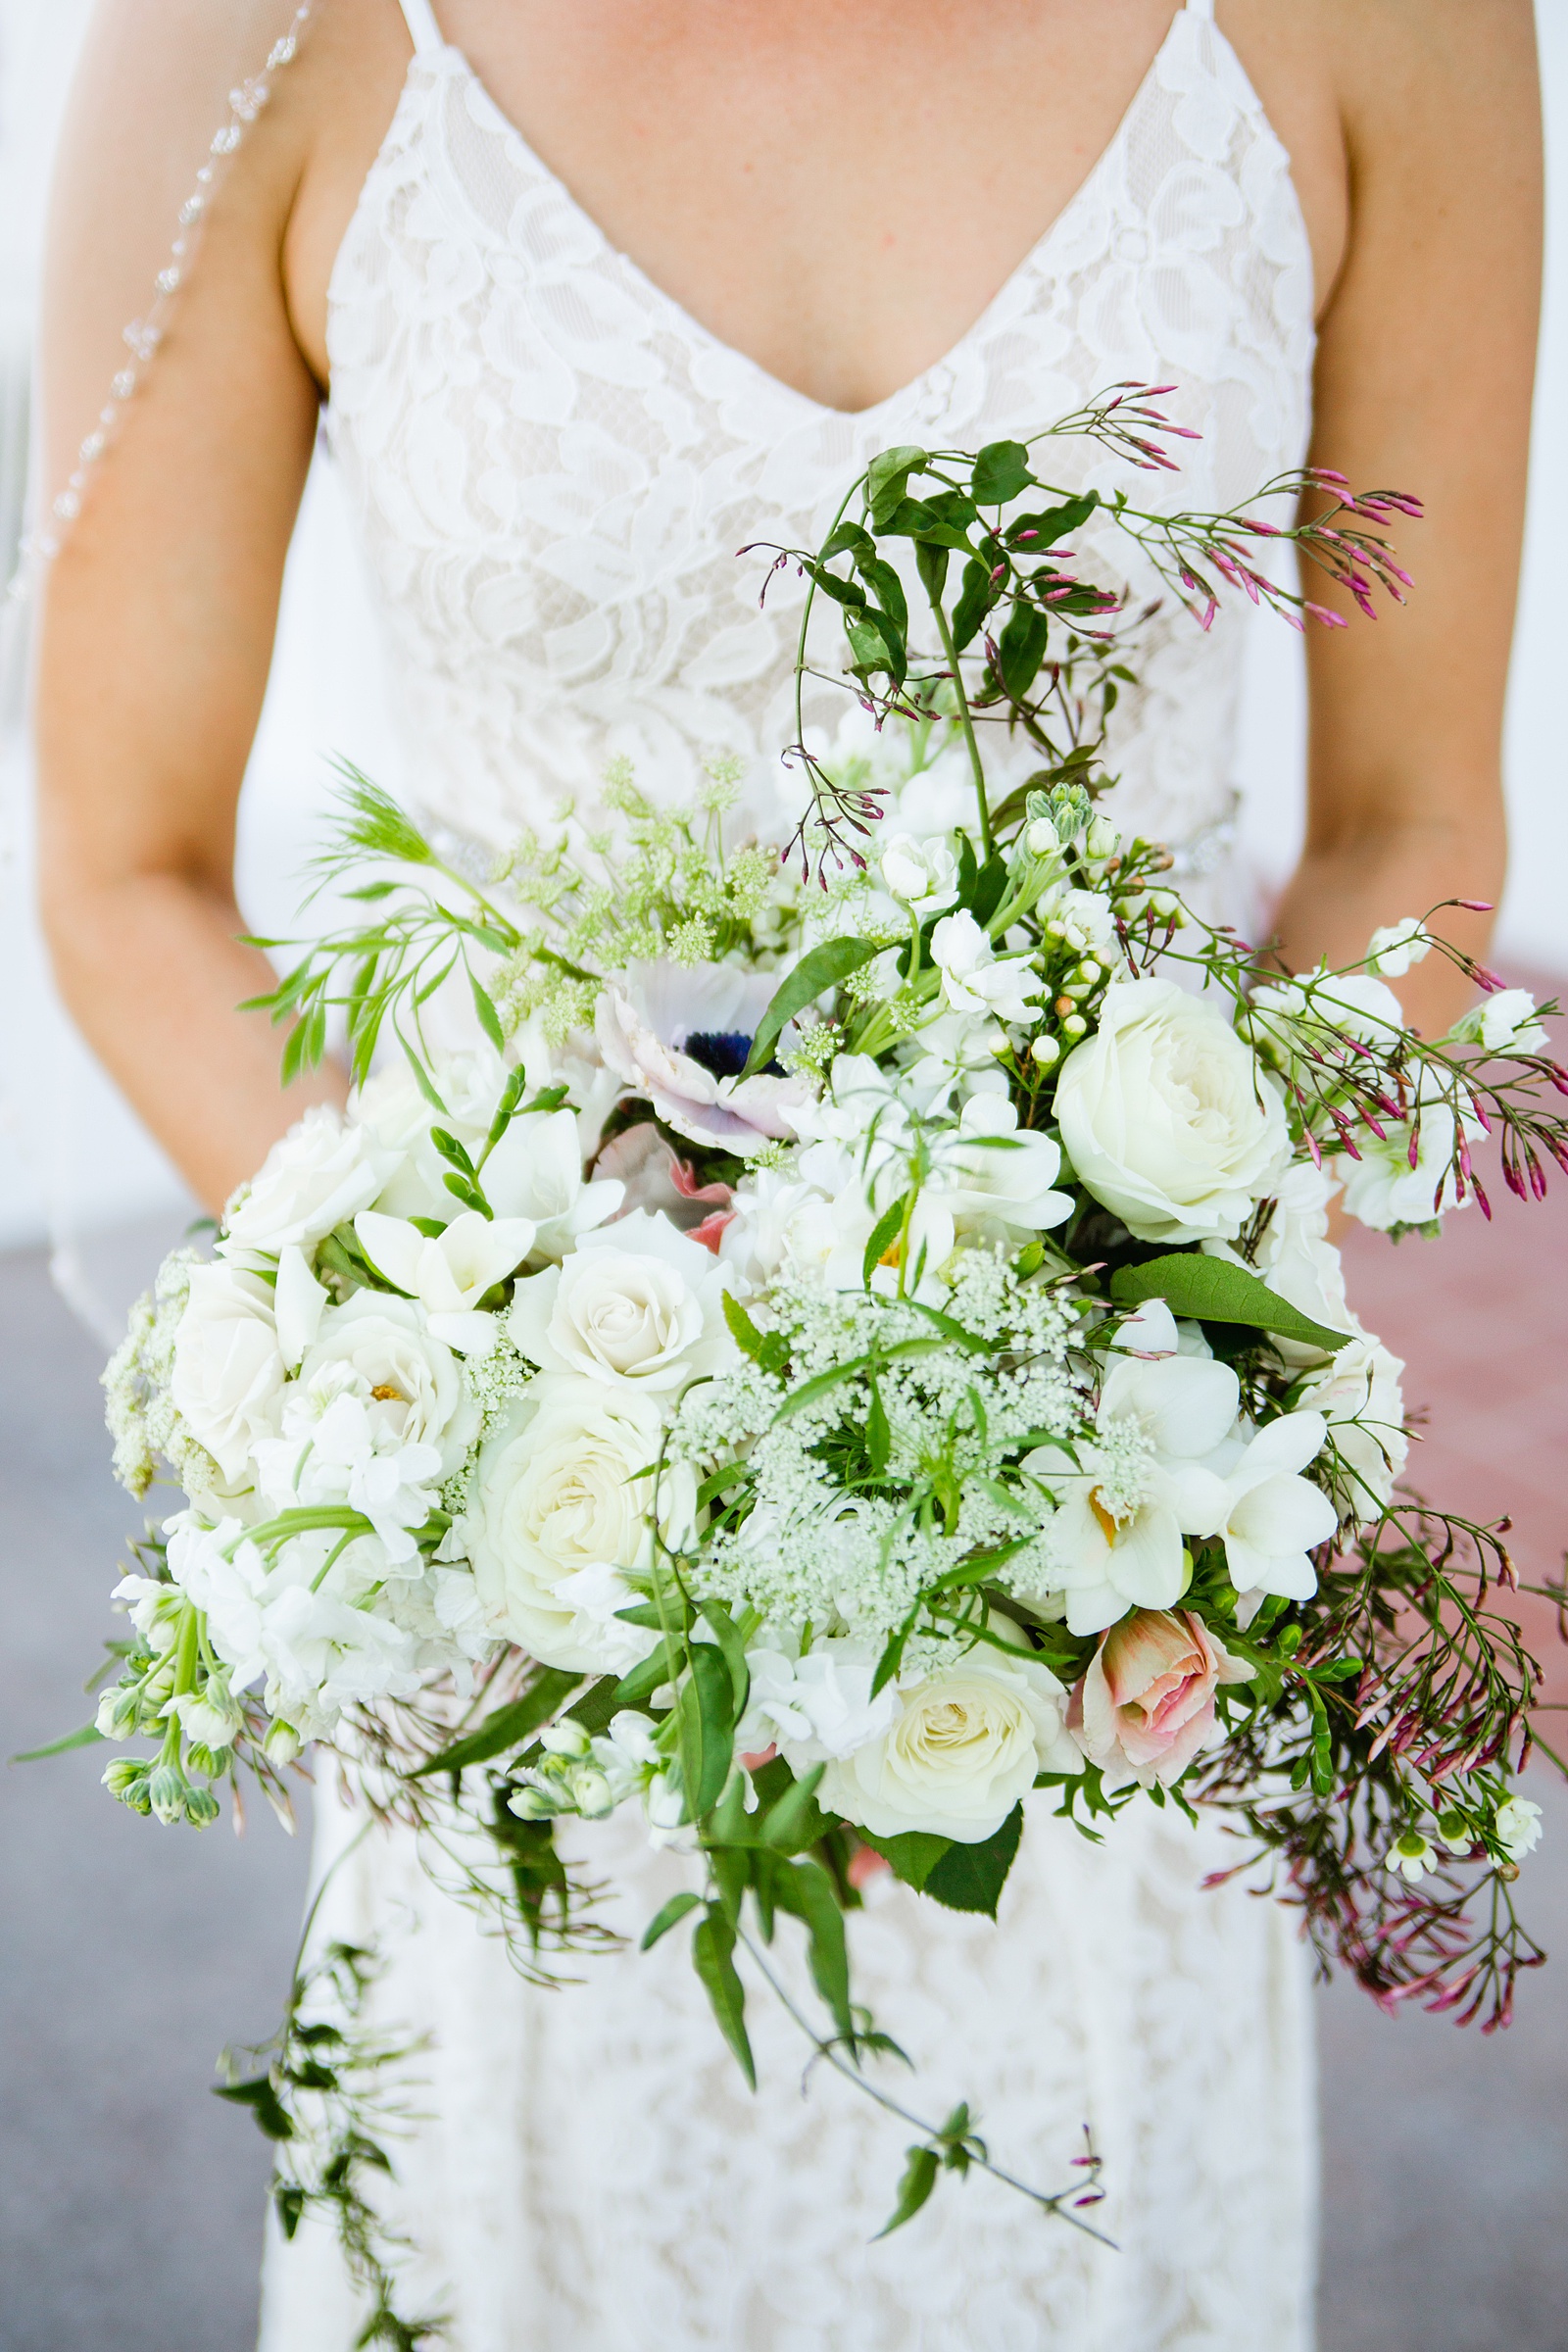 Bride's white wild garden bouquet by PMA Photography.